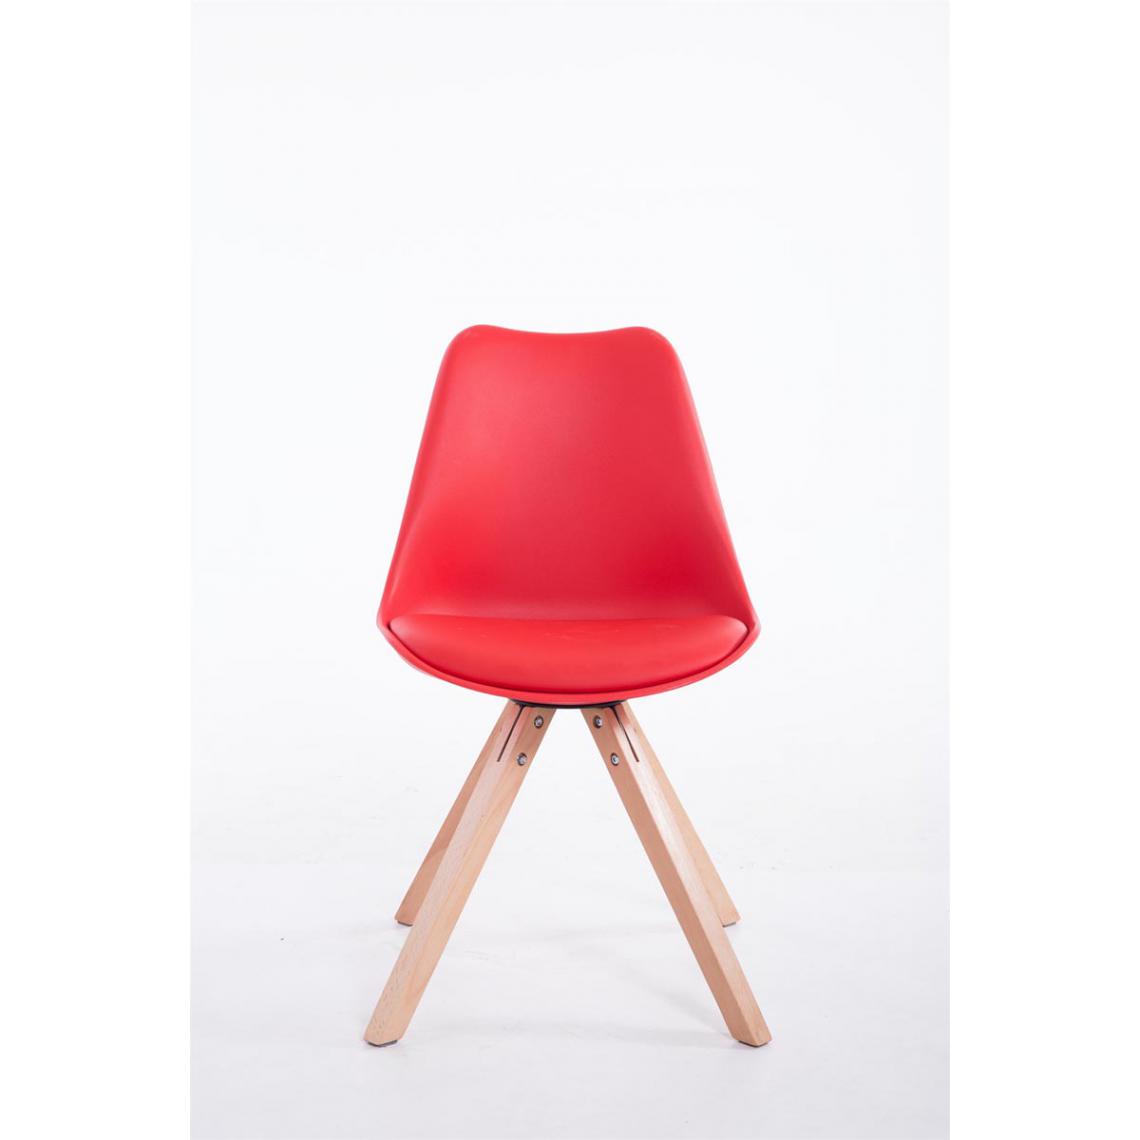 Icaverne - Moderne Chaise visiteur edition Katmandou Natura Square couleur rouge - Chaises